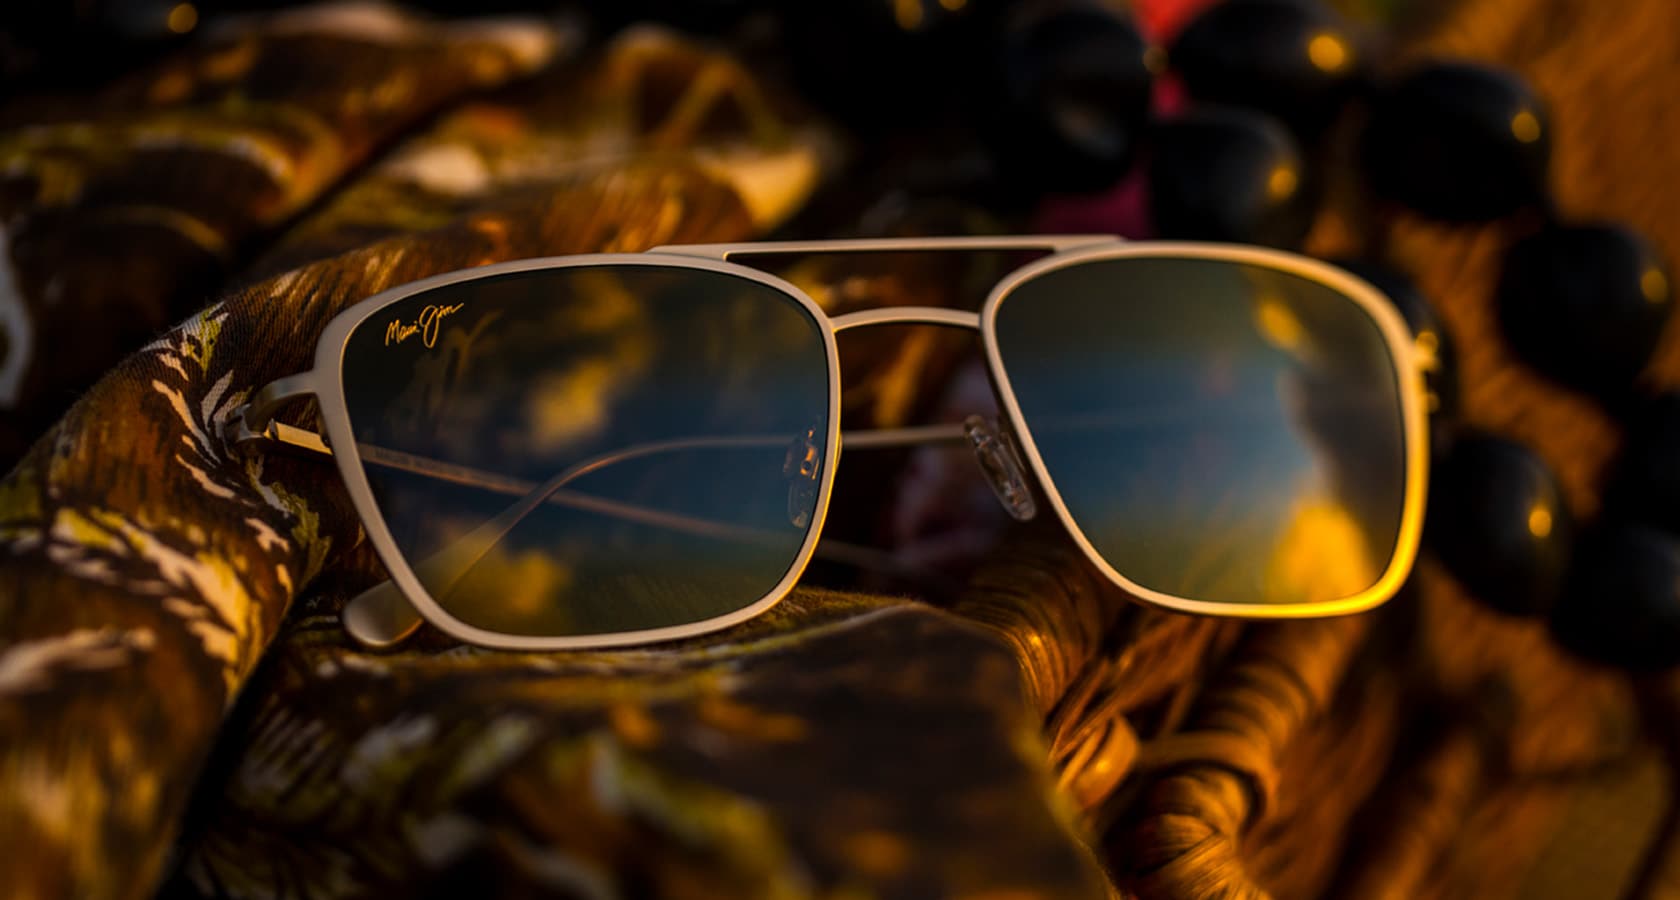 gafas de sol de titanio mate expuestas sobre cesta